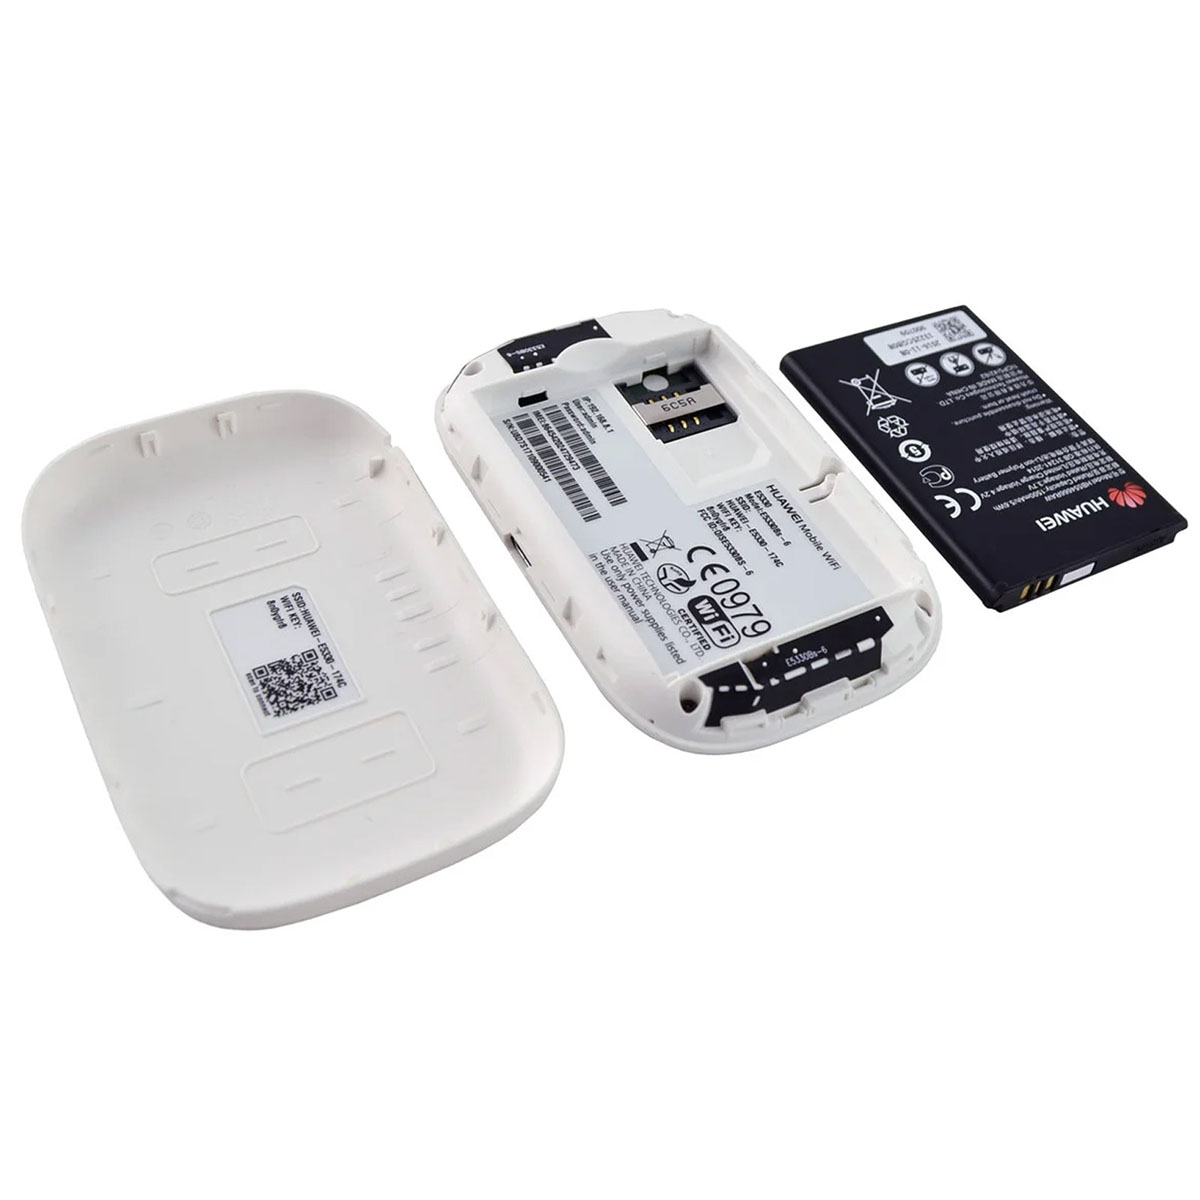 Портативный, автономный 3G, 2G модем, WiFi роутер, маршрутизатор HUAWEI E5330, цвет белый